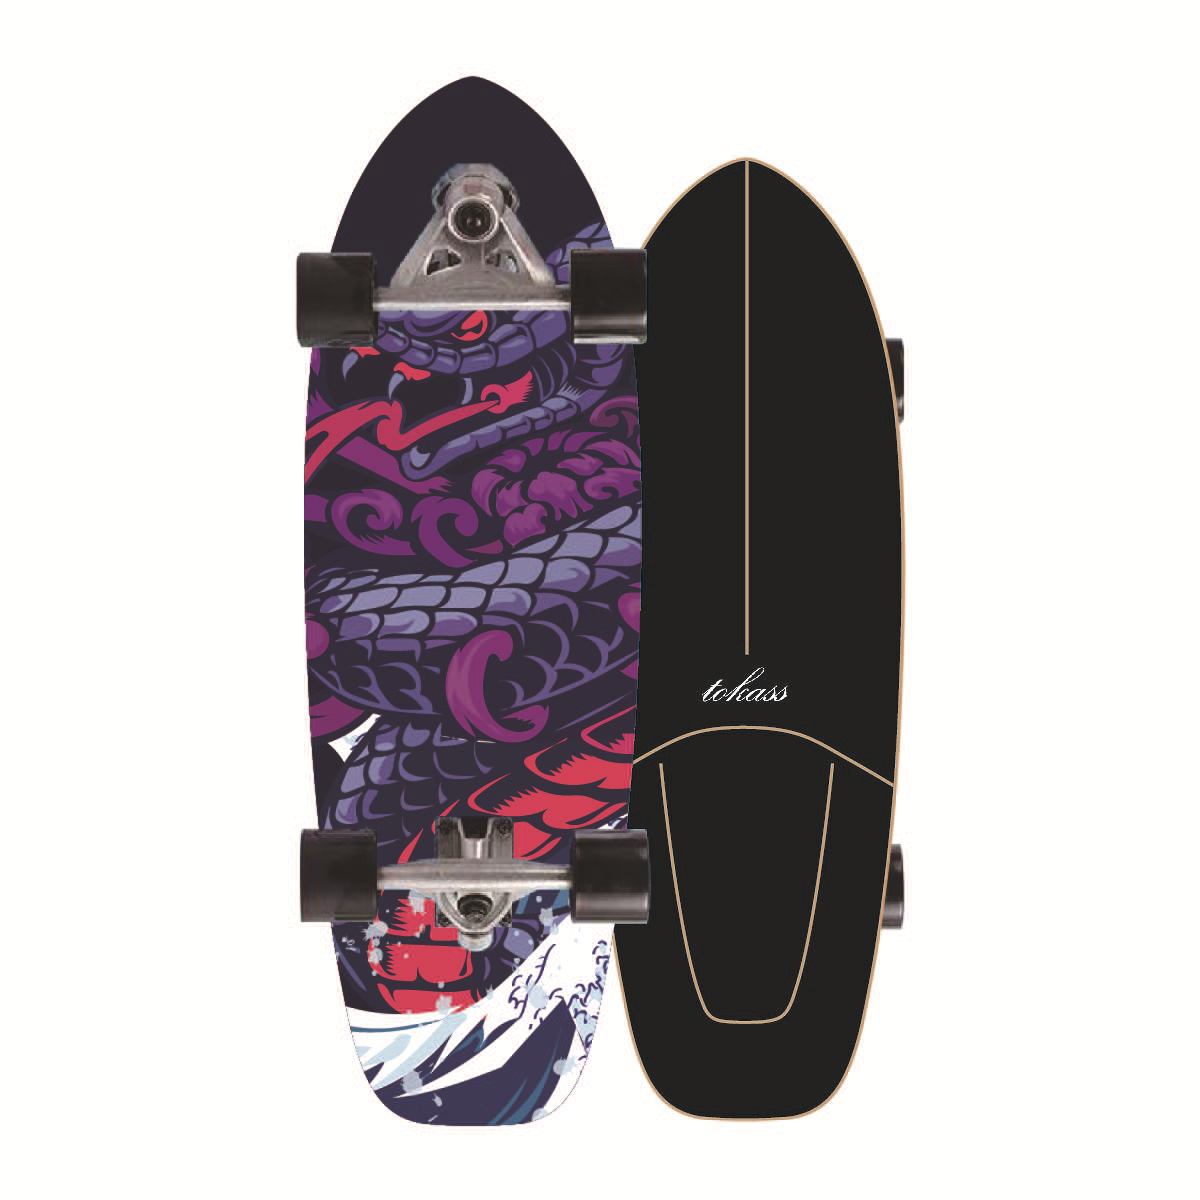 (สินค้าพร้อมส่ง) เซิร์ฟสเก็ต Surf Board CX7 สเก็ตบอร์ด เซิร์ฟบอร์ด Surf Skate สเก็ตบอร์ดคุณภาพดี เซริฟสเก็ต รองรับน้ำหนักได้ 150 กก. ล้อมุนได้ แถมด้วยกระเป๋า